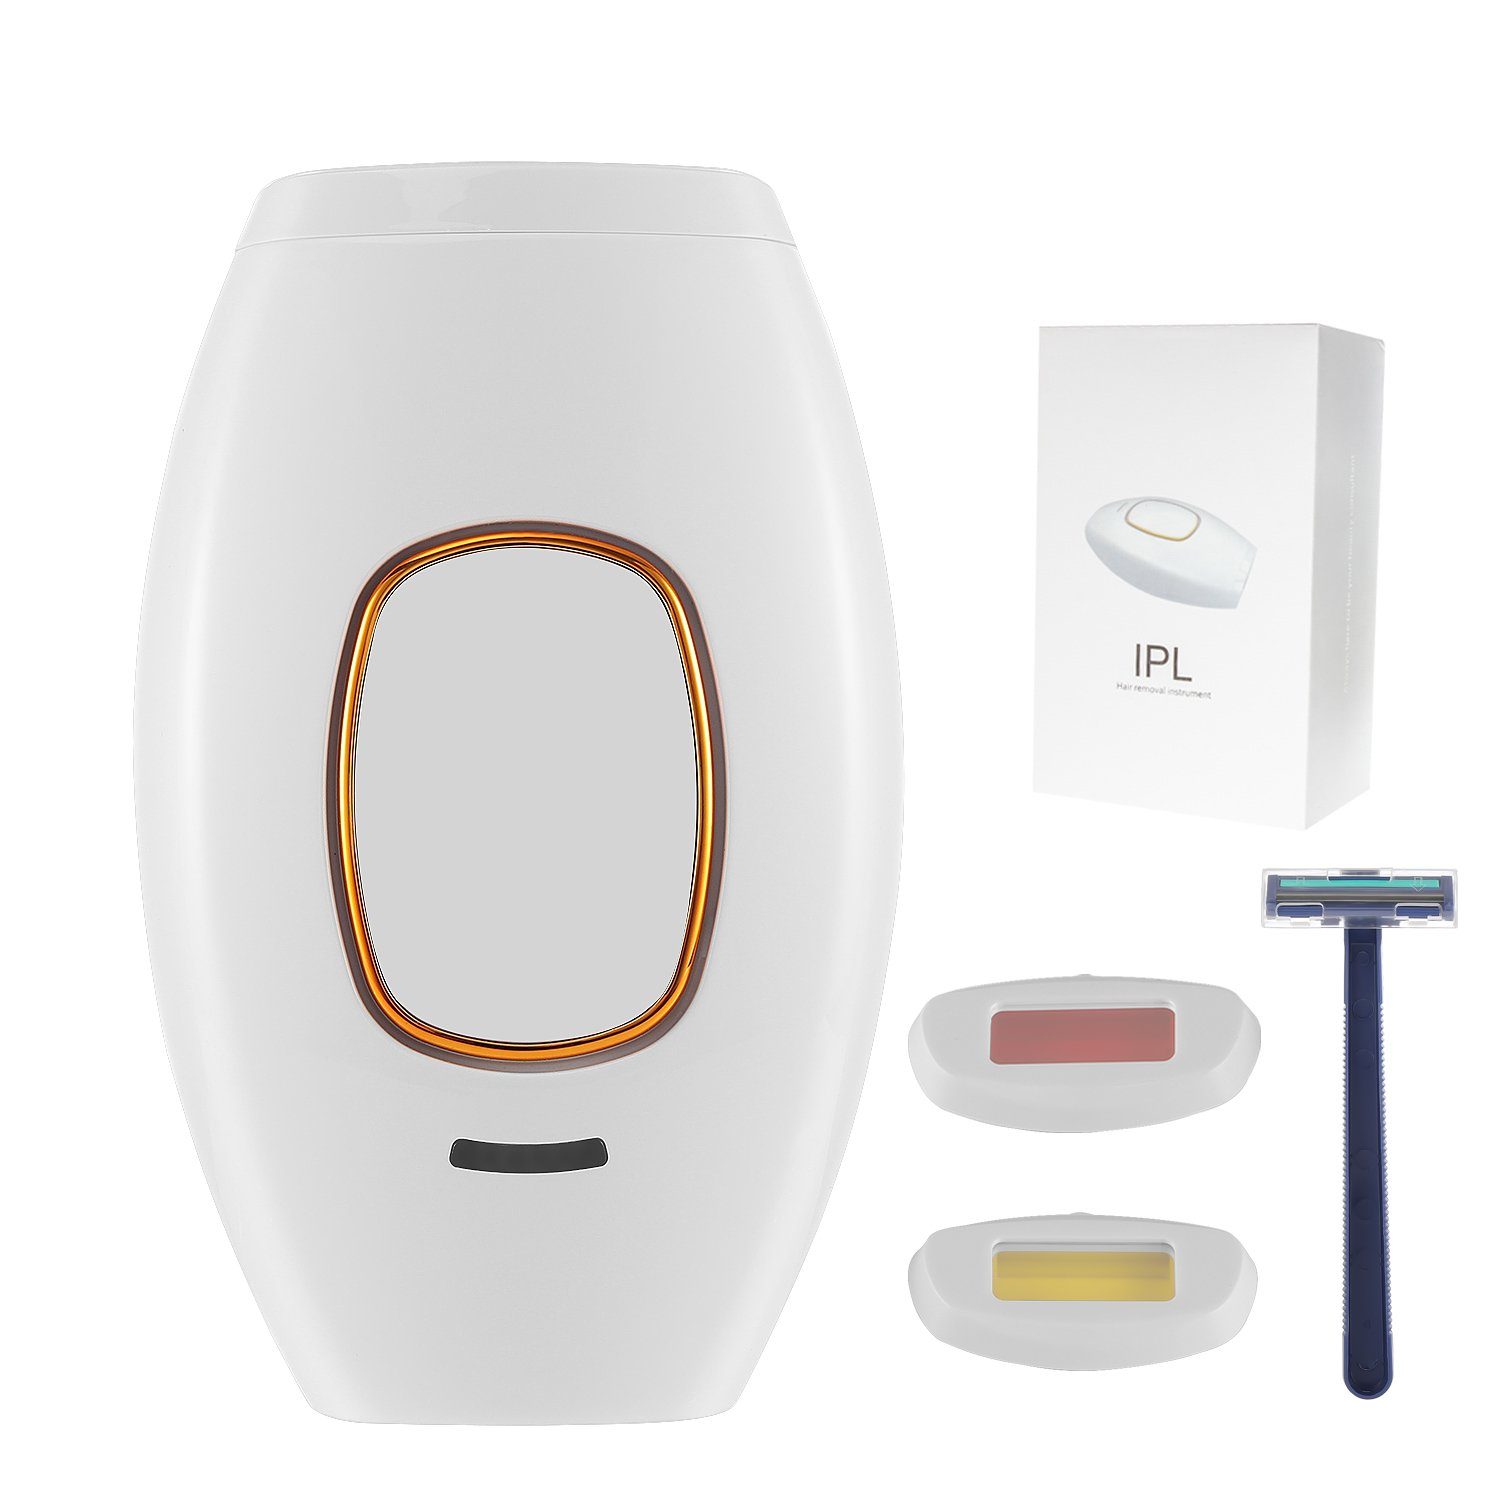 LETGOSPT IPL-Haarentferner IPL Geräte Haarentfernungsgerät Laser, mit 5 Energiestufen & 2 Modi, 990.000 Lichtimpulse, für Körper, Gesicht, Bikinizone und Achseln